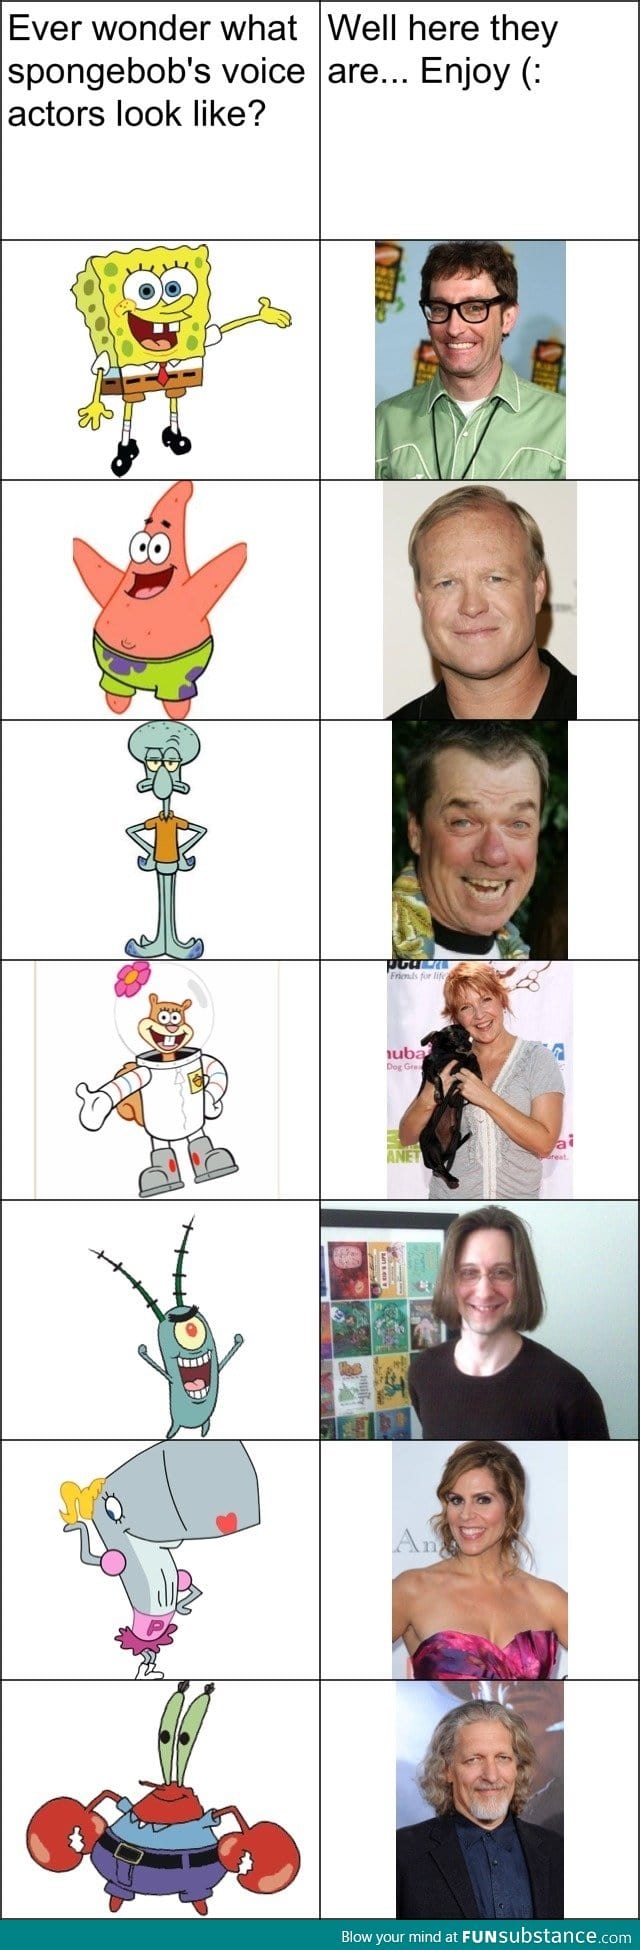 Spongebob Voice Actors